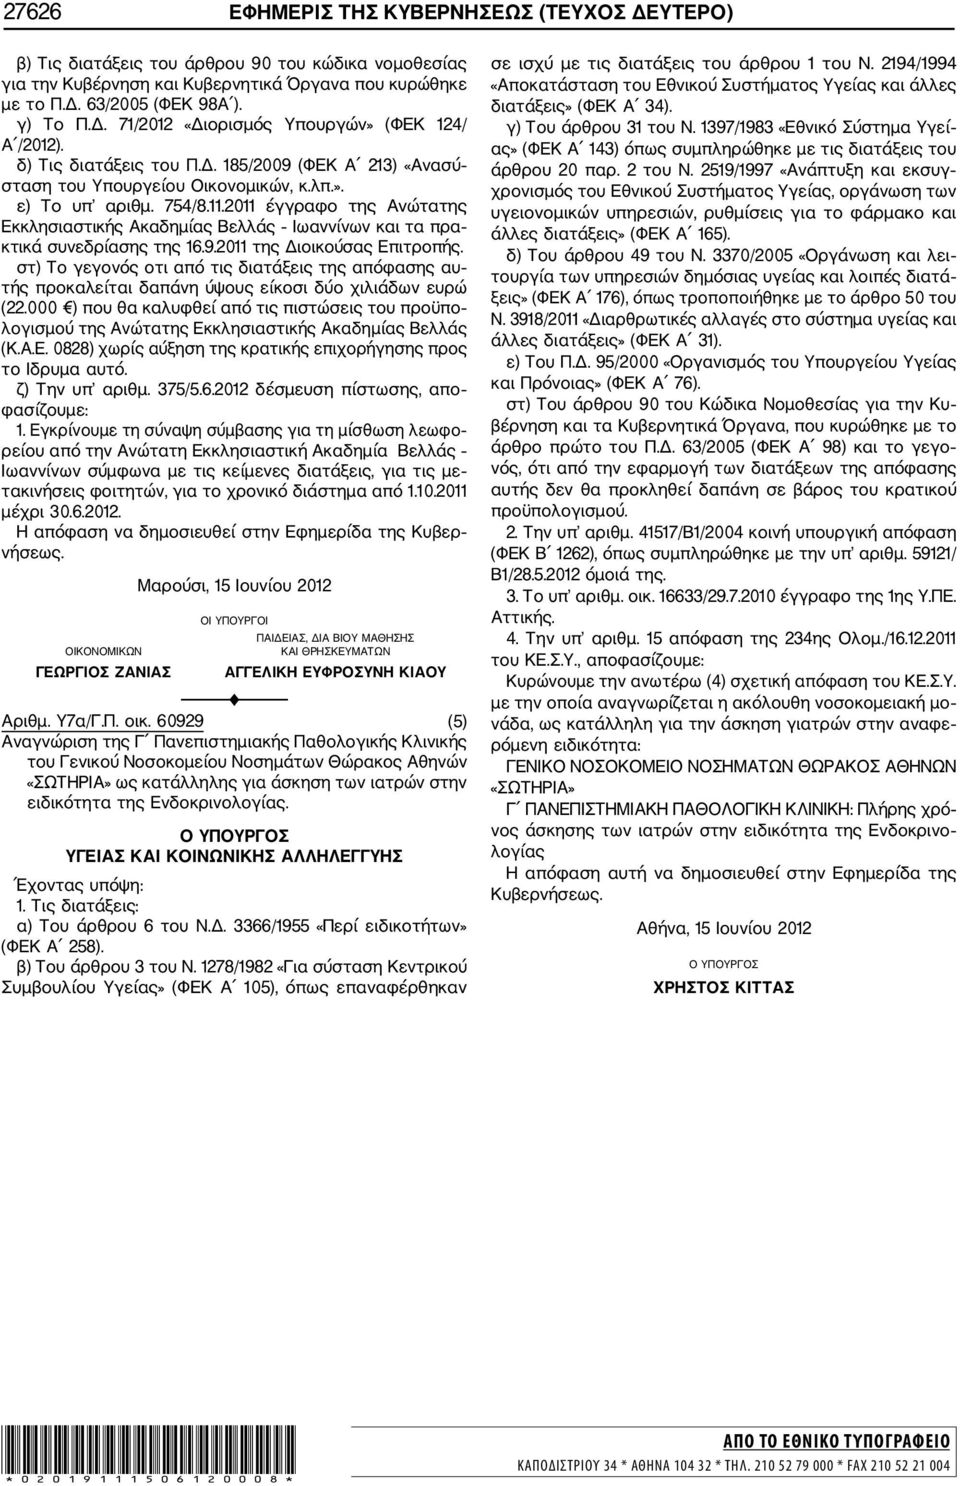 2011 έγγραφο της Ανώτατης Εκκλησιαστικής Ακαδημίας Βελλάς Ιωαννίνων και τα πρα κτικά συνεδρίασης της 16.9.2011 της Διοικούσας Επιτροπής.